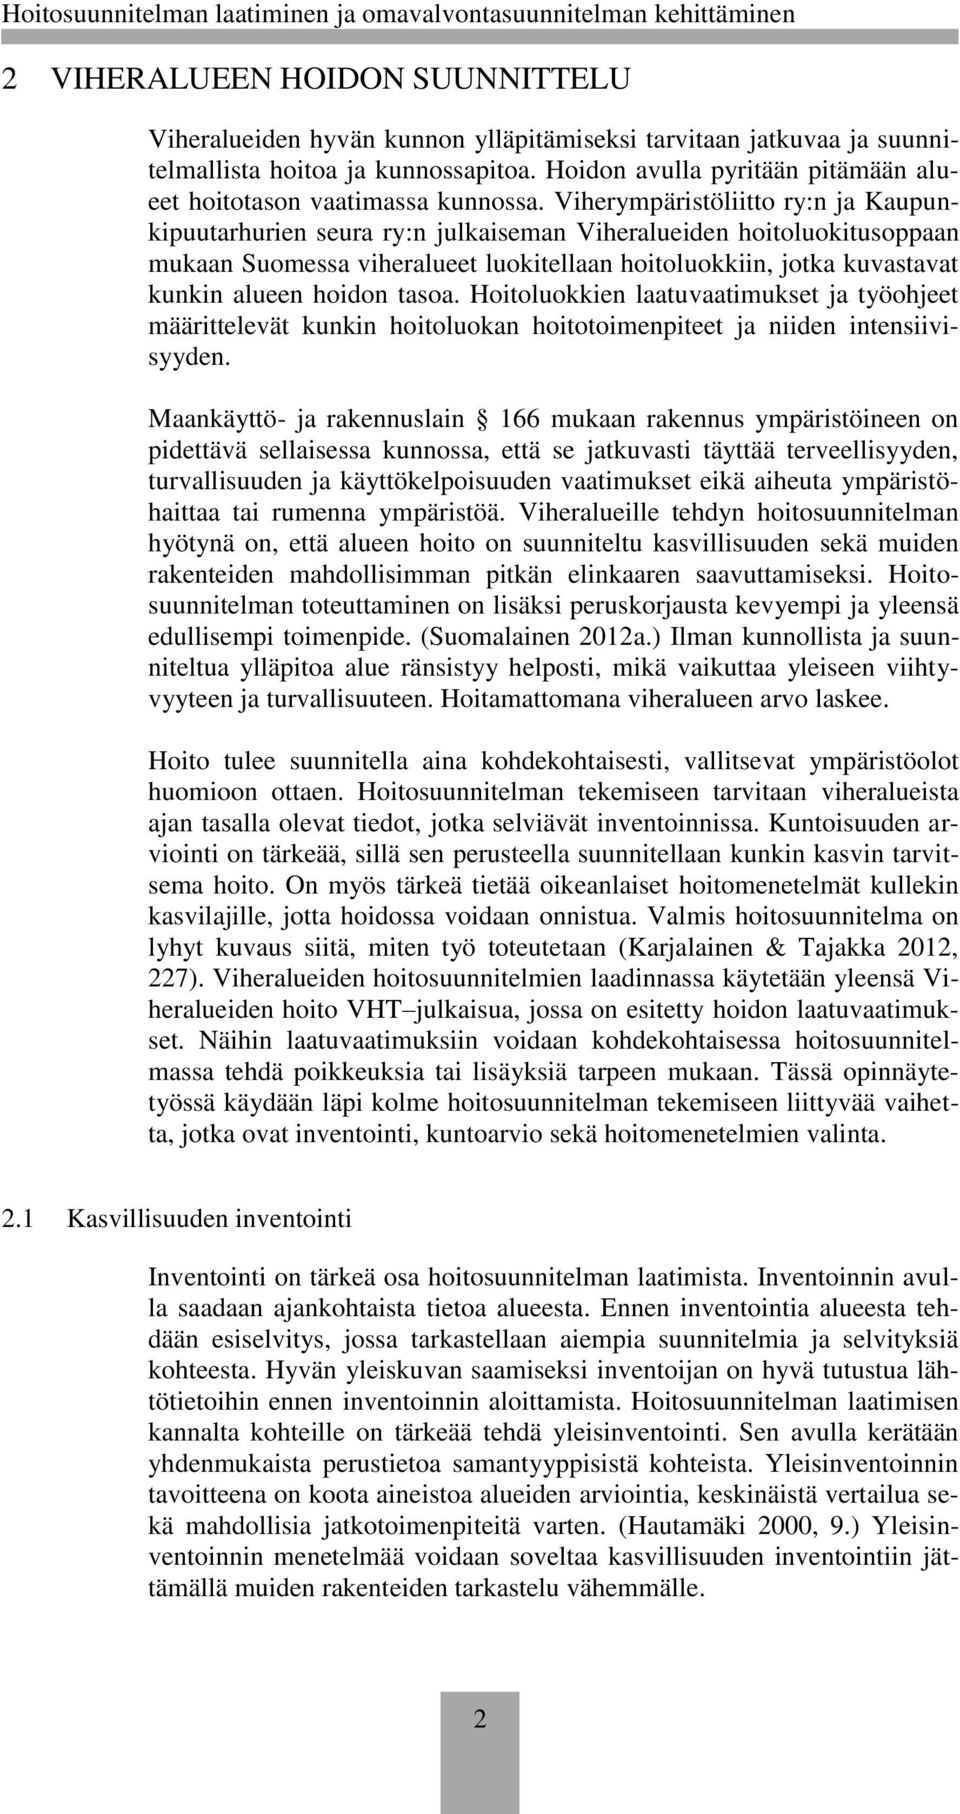 Viherympäristöliitto ry:n ja Kaupunkipuutarhurien seura ry:n julkaiseman Viheralueiden hoitoluokitusoppaan mukaan Suomessa viheralueet luokitellaan hoitoluokkiin, jotka kuvastavat kunkin alueen